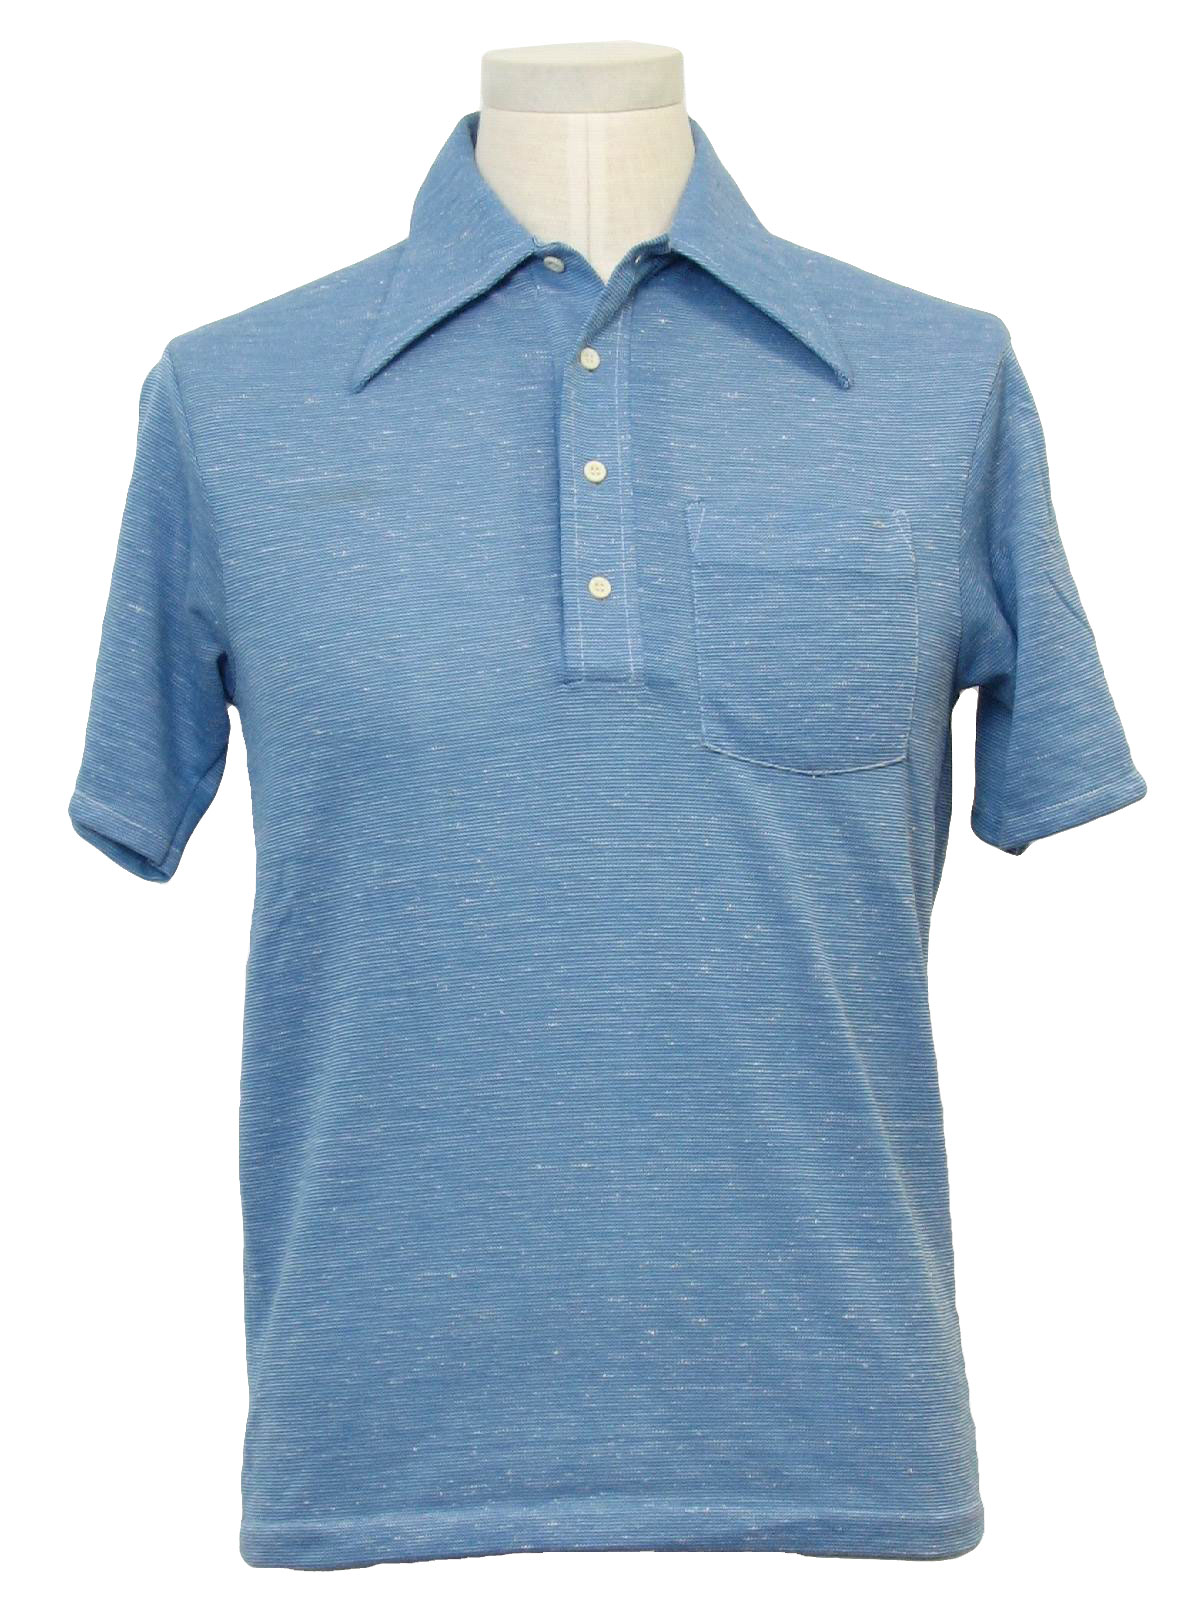 1970's Vintage Wrangler Shirt: 70s -Wrangler- Mens shaded blue and ...